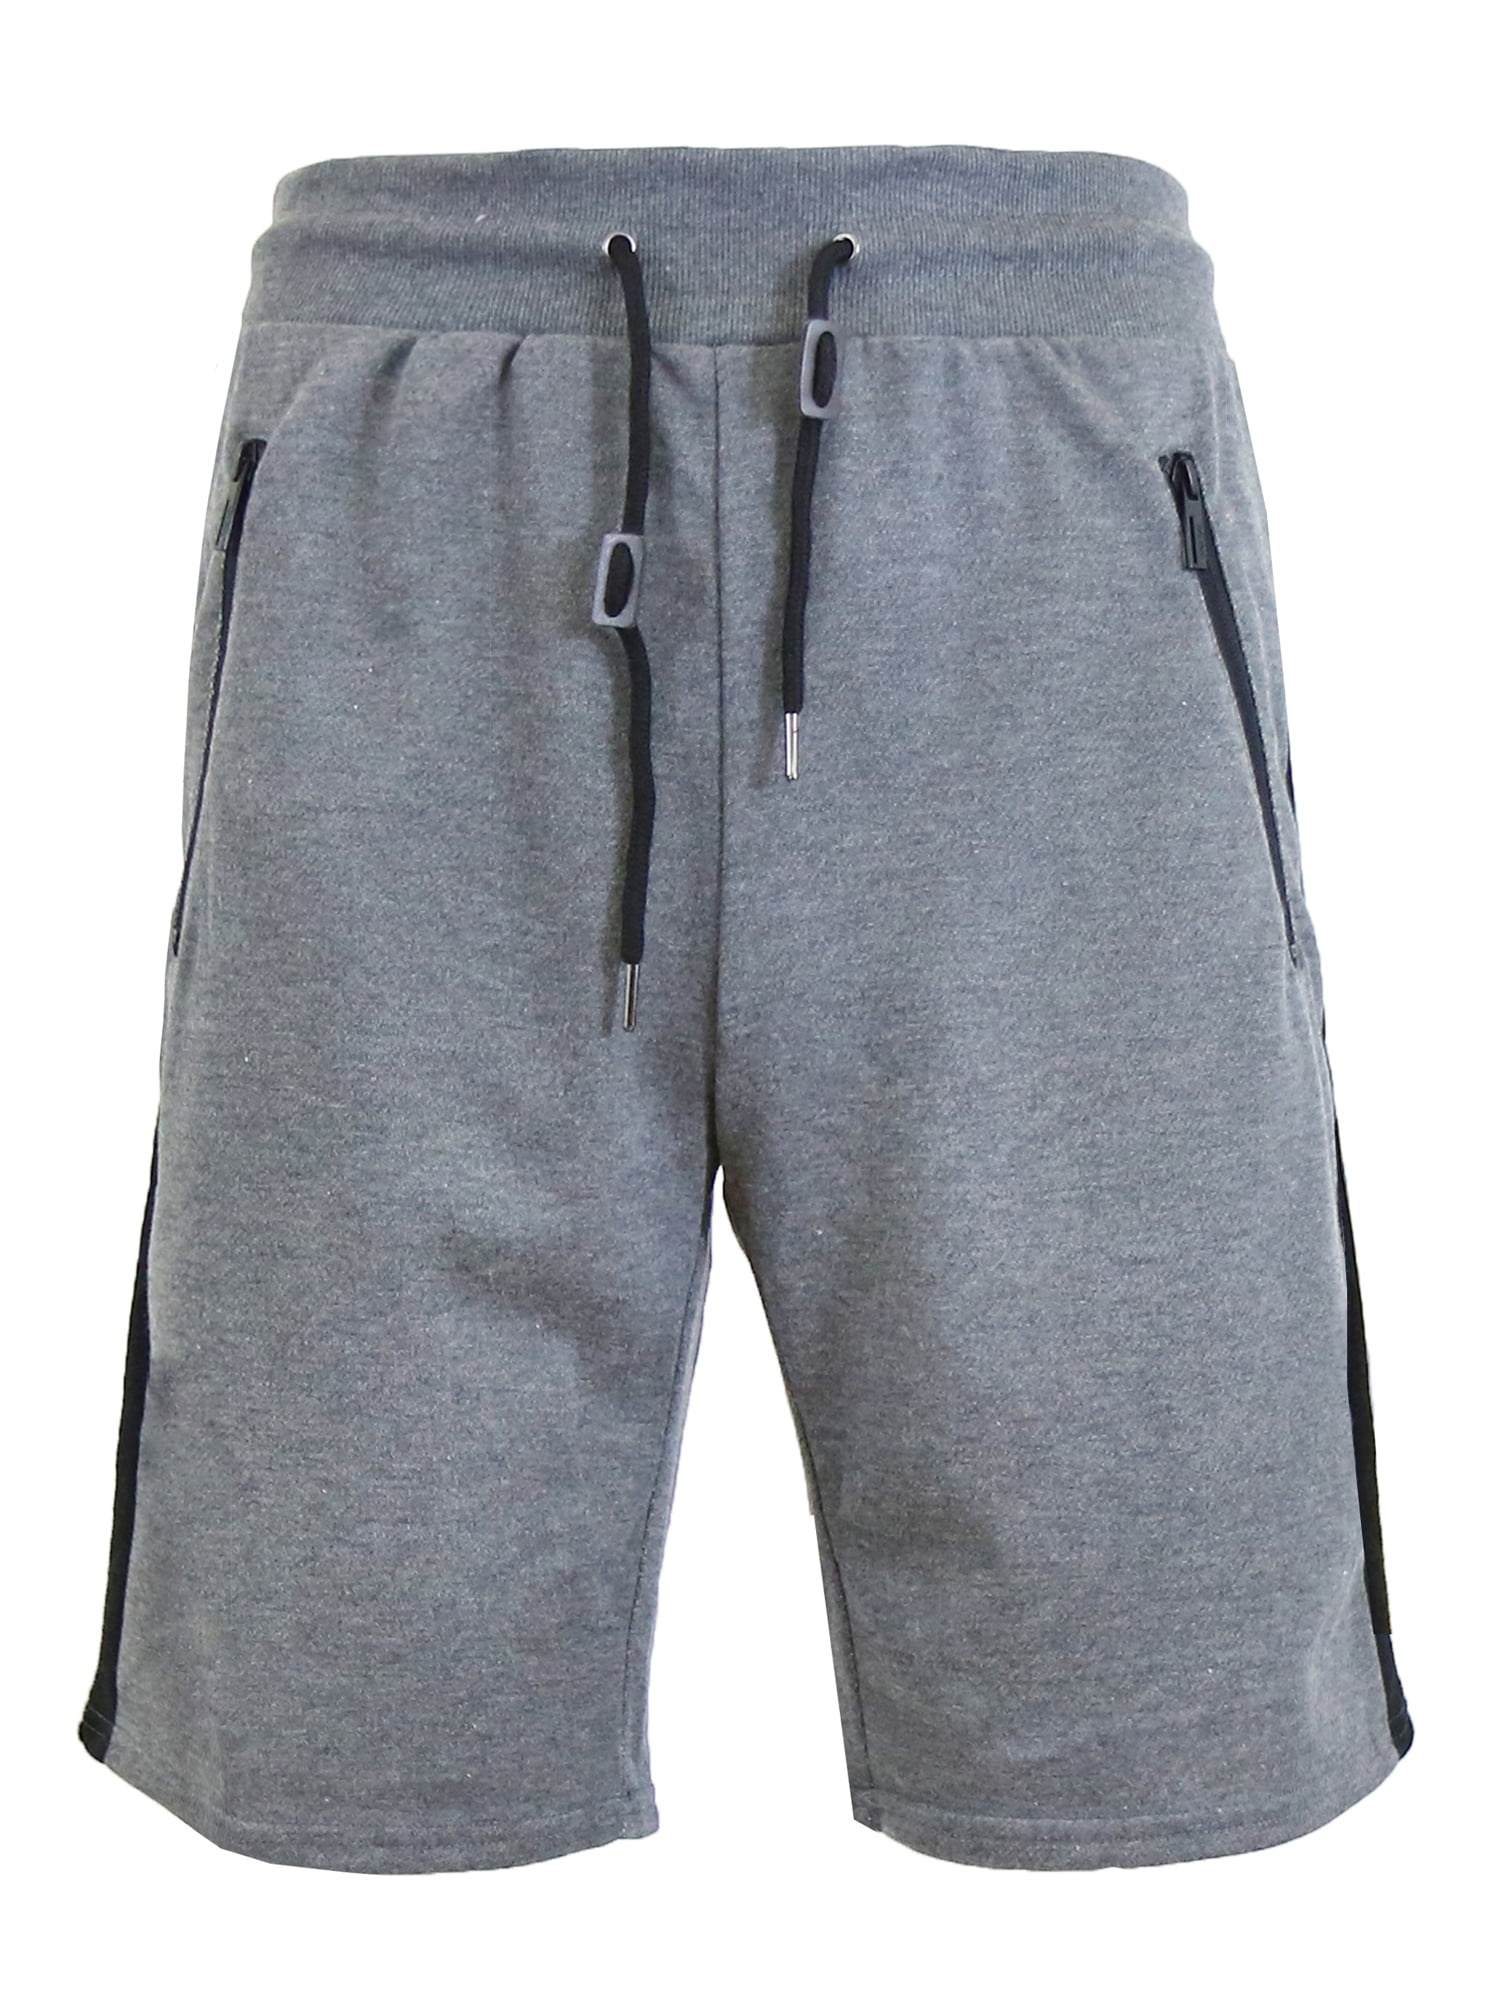 GBH - Men’s Sweat Jogger Shorts With Trim - Walmart.com - Walmart.com